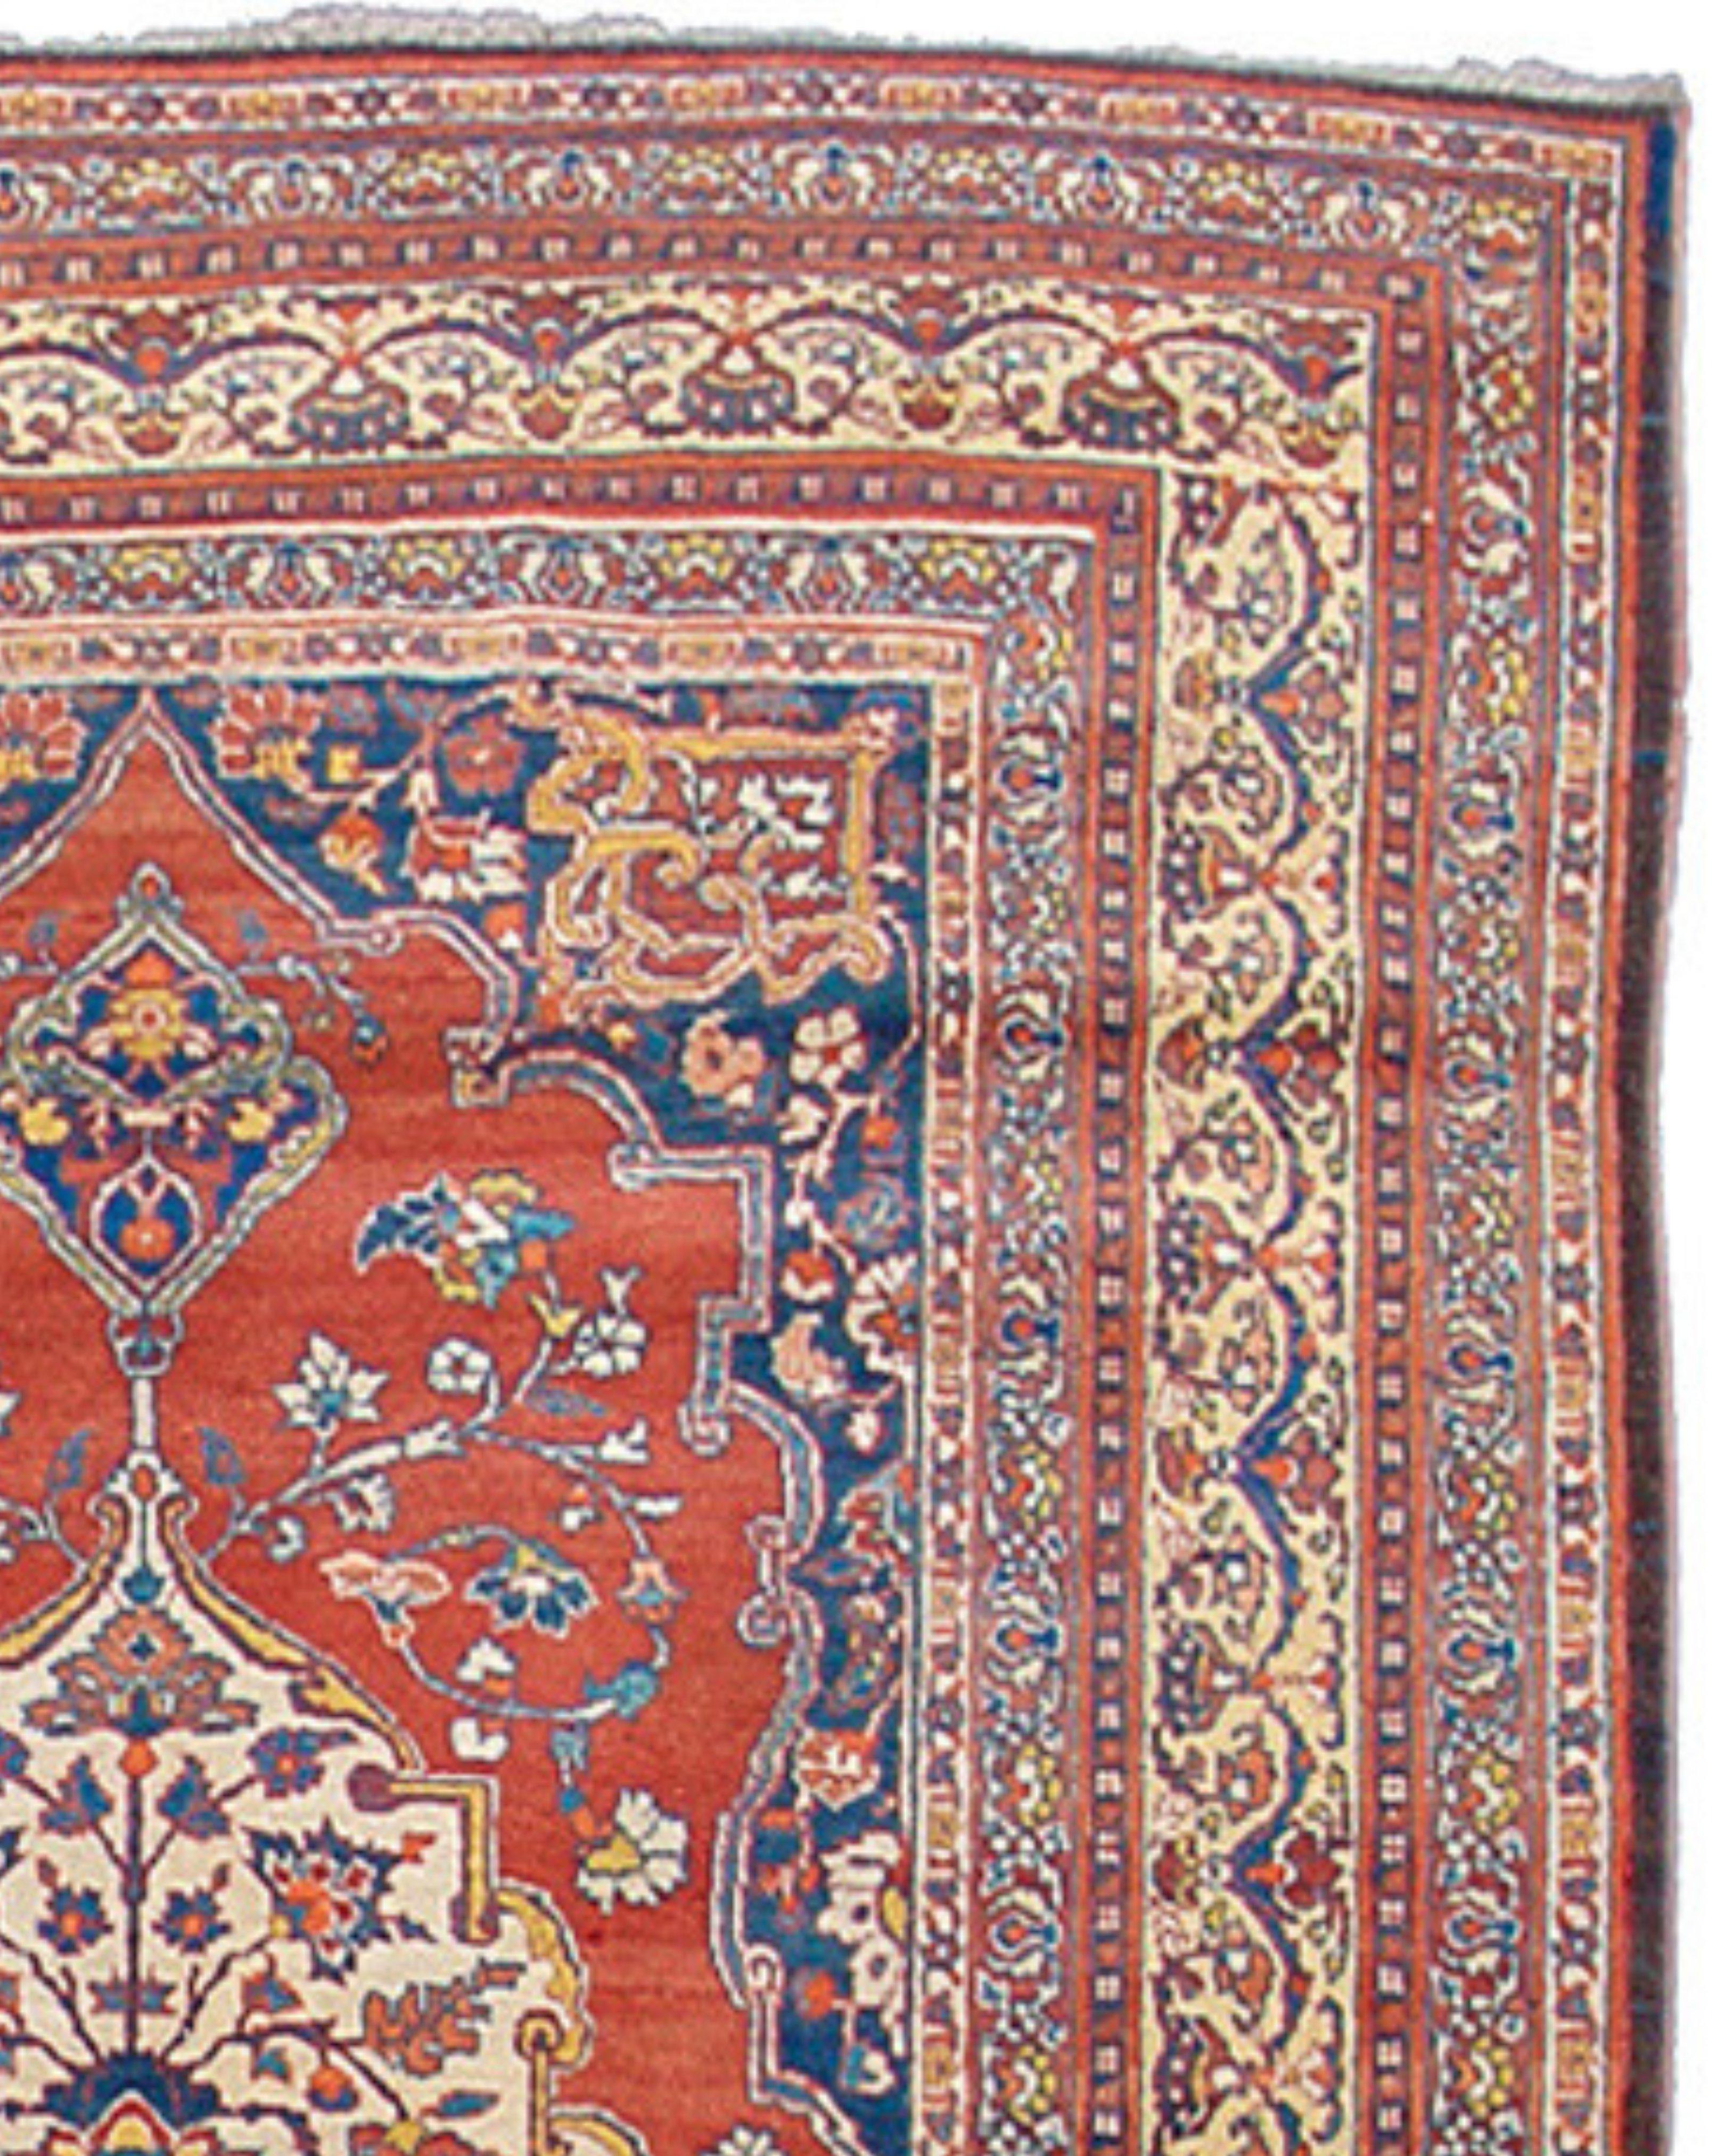 Tapis persan antique de Tabriz, 19e siècle

Excellent état.

Informations complémentaires :
Dimensions : 4'5